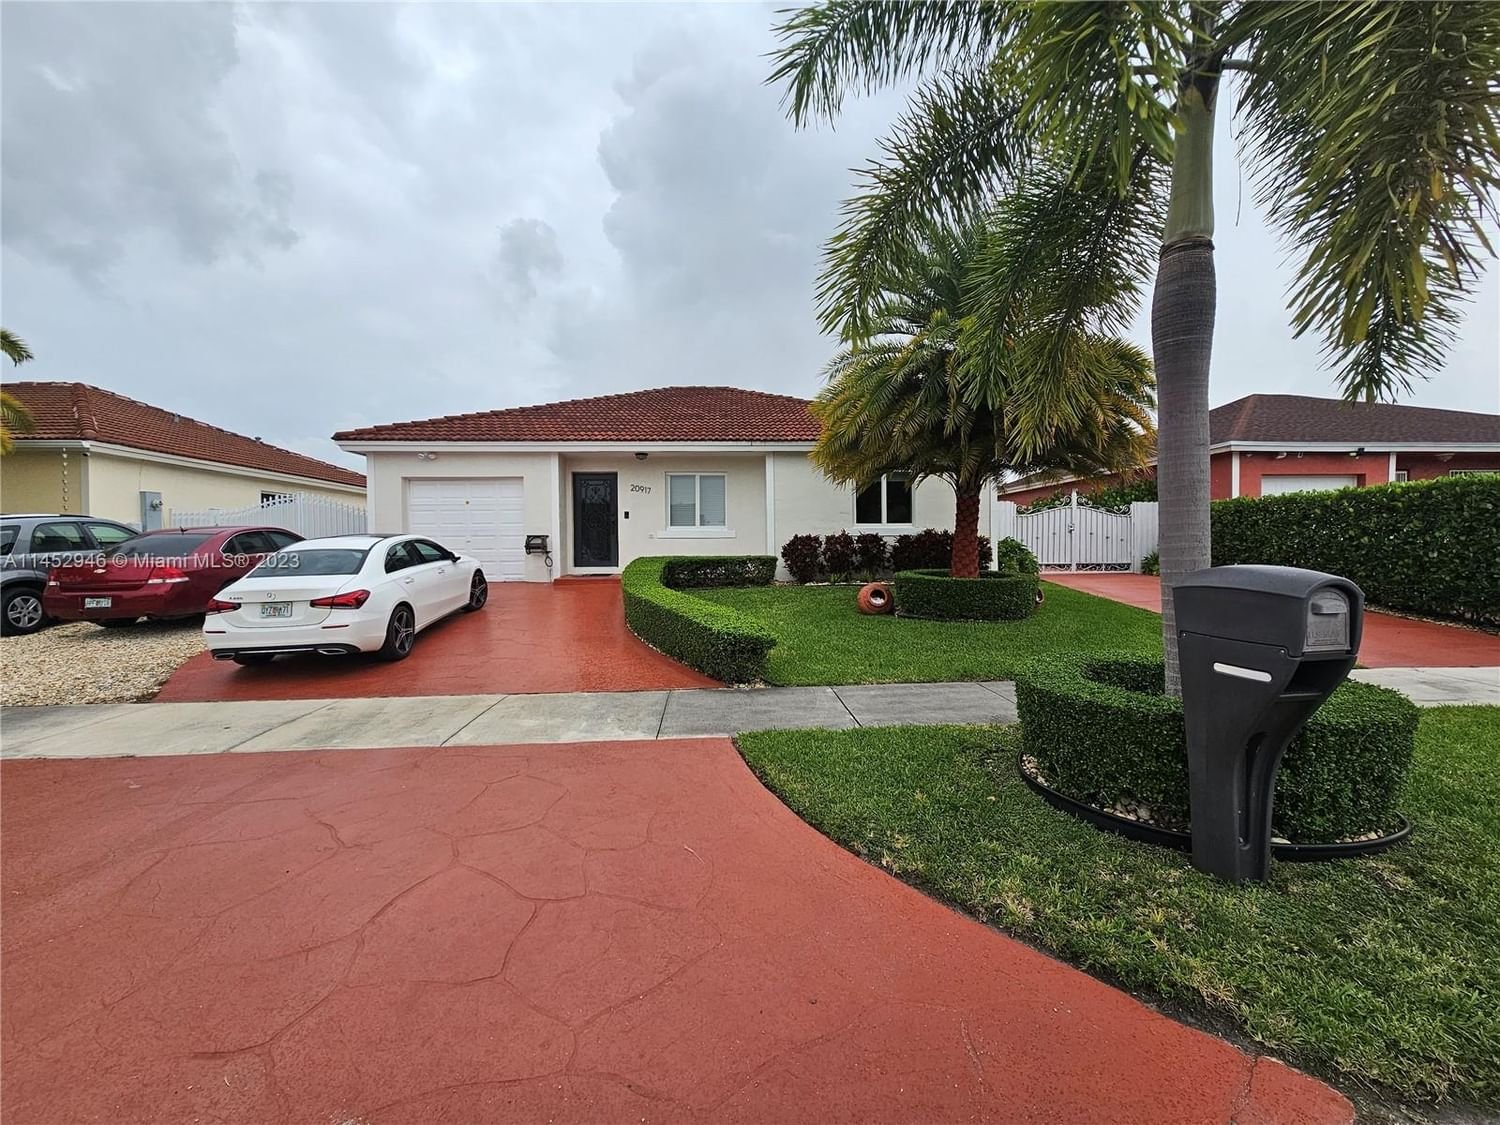 Real estate property located at 20917 125th Avenue Rd, Miami-Dade County, OAK PARK SEC 7, Miami, FL